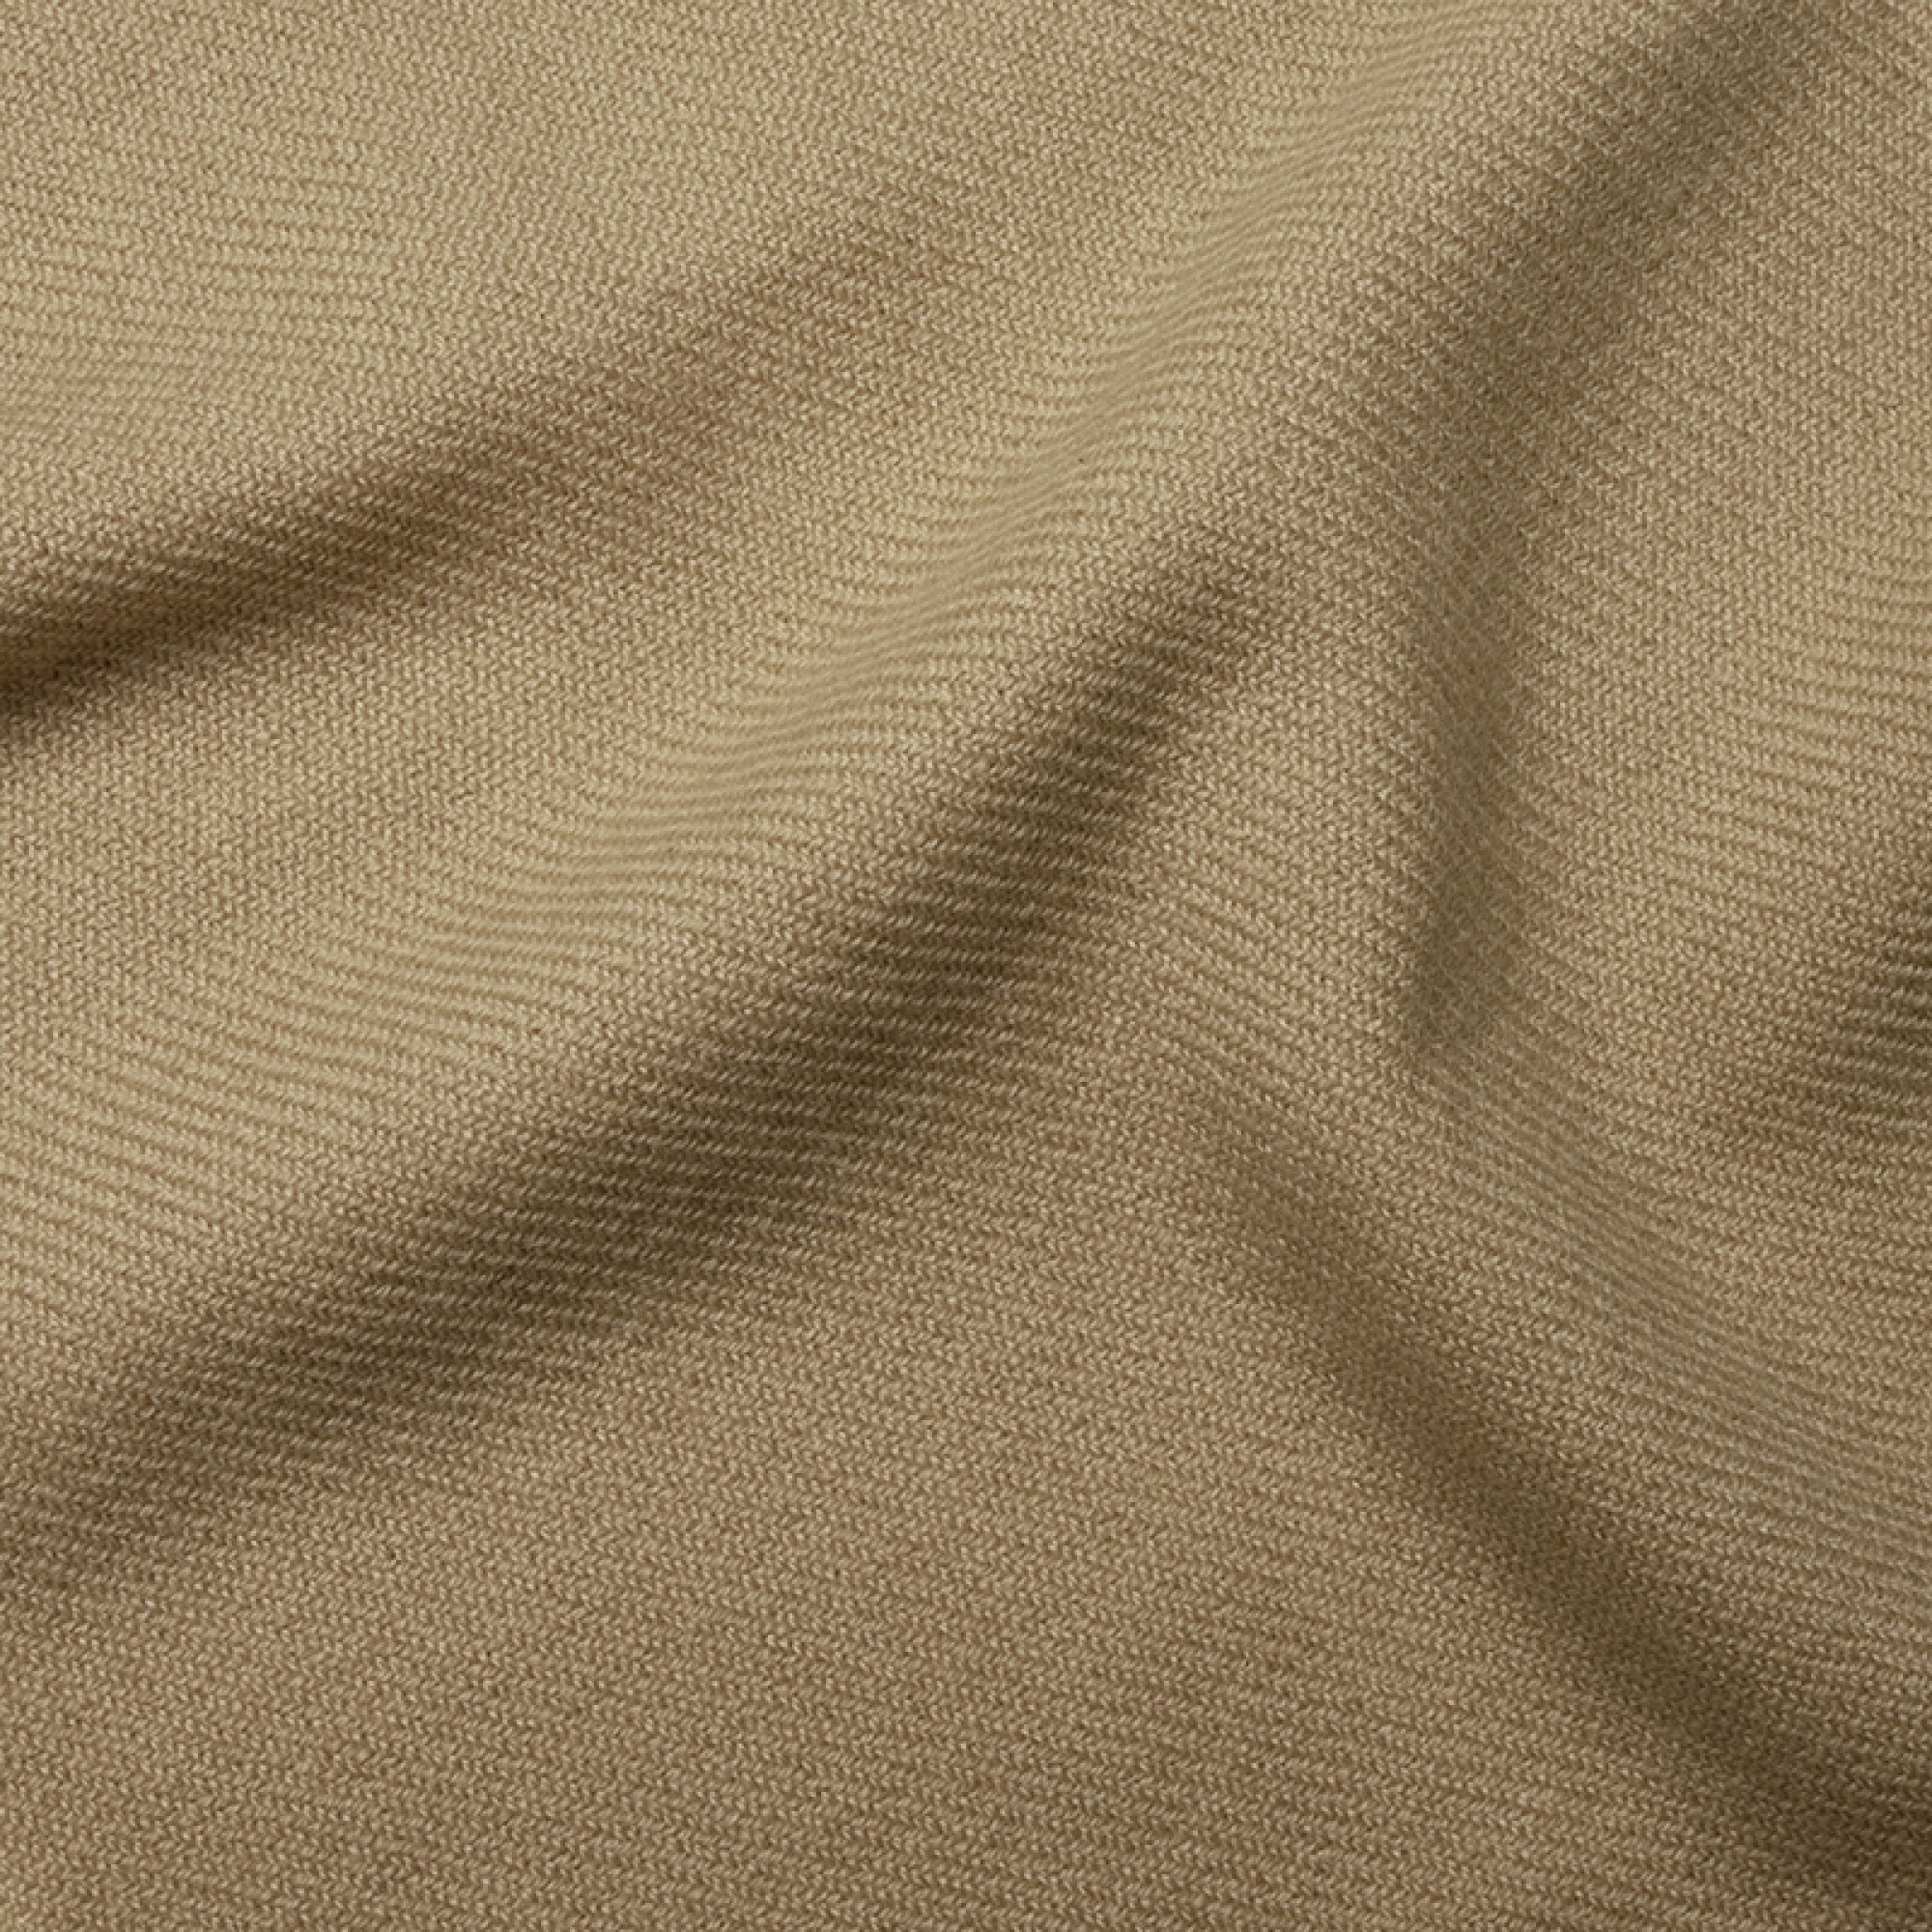 Cachemire accessoires couvertures plaids frisbi 147 x 203 beige 147 x 203 cm